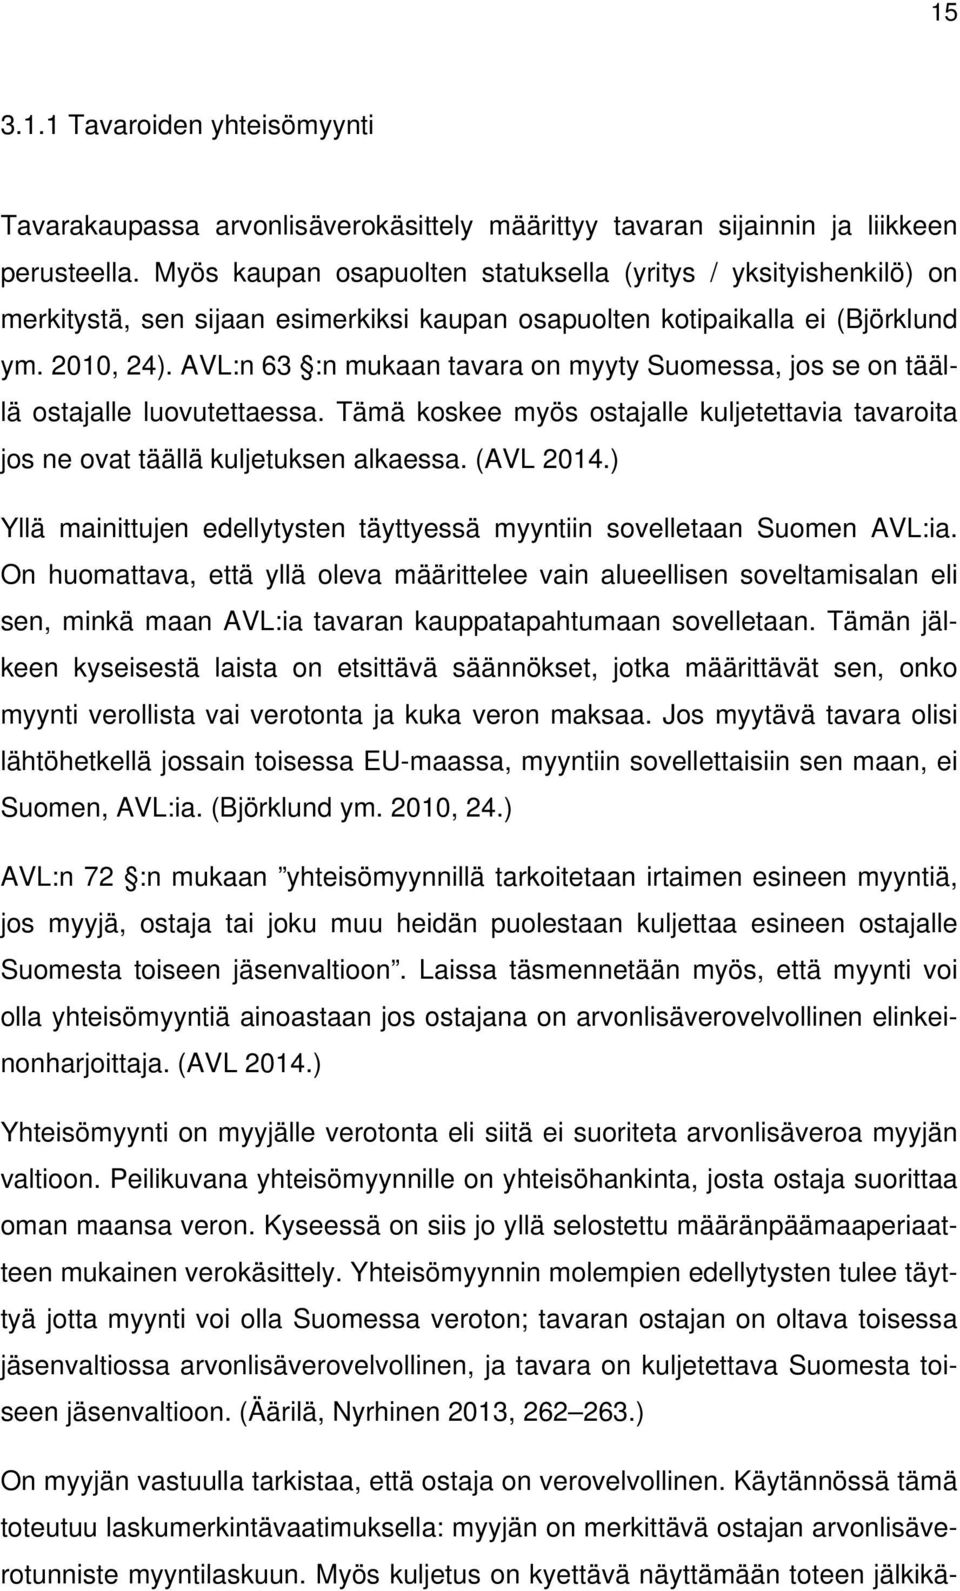 AVL:n 63 :n mukaan tavara on myyty Suomessa, jos se on täällä ostajalle luovutettaessa. Tämä koskee myös ostajalle kuljetettavia tavaroita jos ne ovat täällä kuljetuksen alkaessa. (AVL 2014.